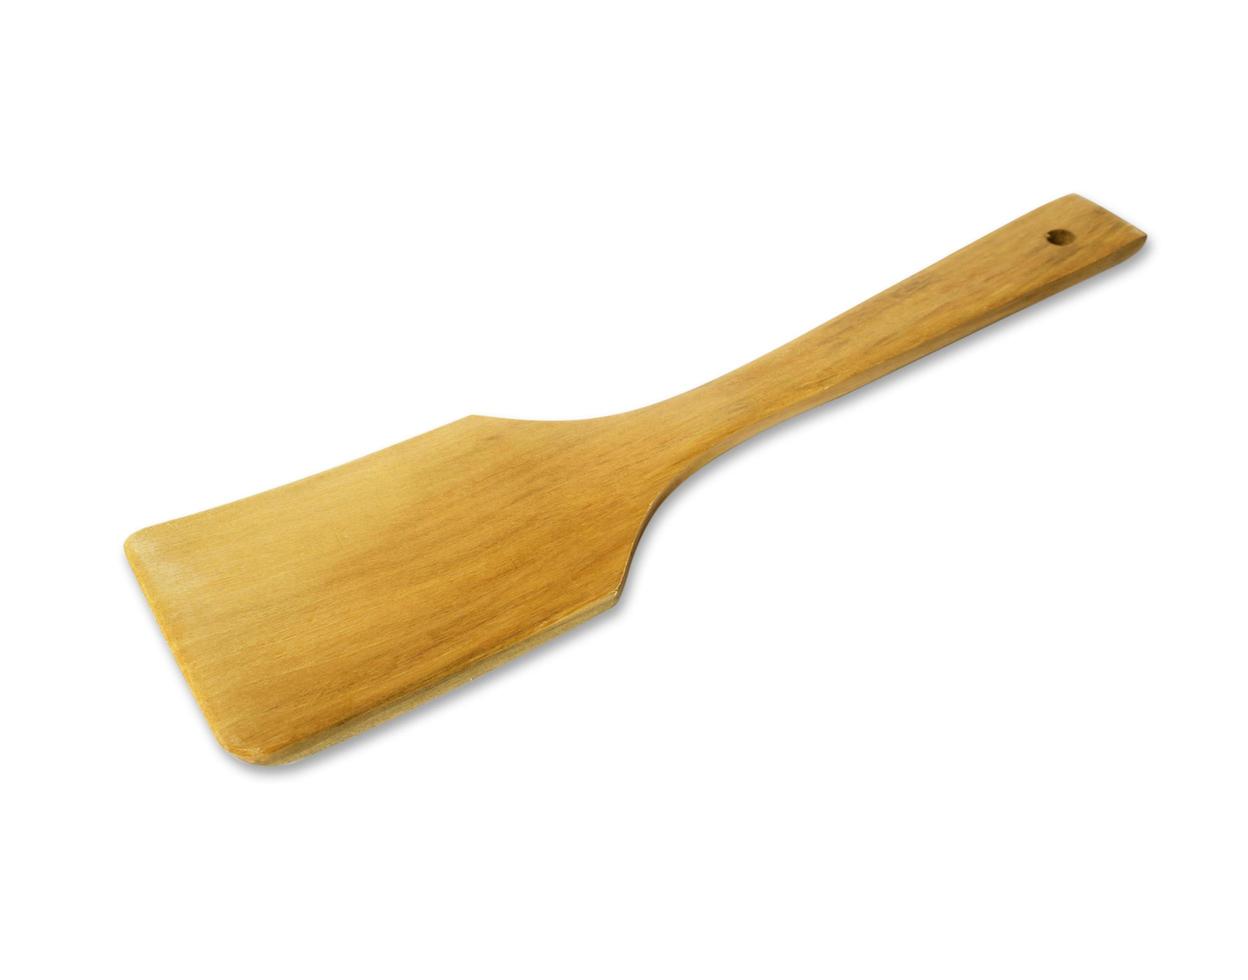 wooden kitchen utensils on white background photo